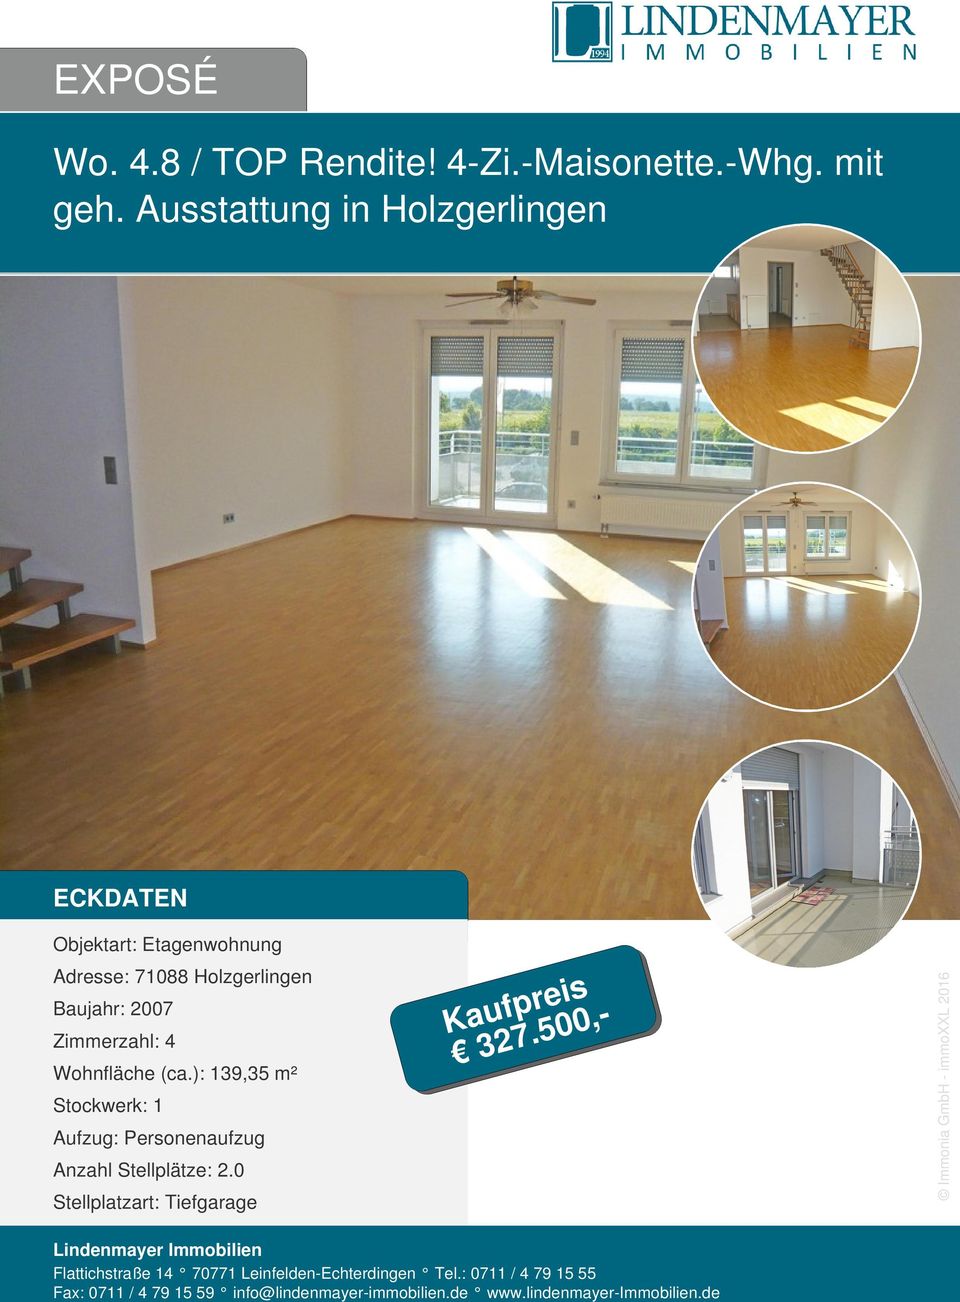 Ausstattung in Holzgerlingen ECKDATEN Adresse: 71088 Holzgerlingen Baujahr: 2007 Zimmerzahl: 4 Wohnfläche (ca.